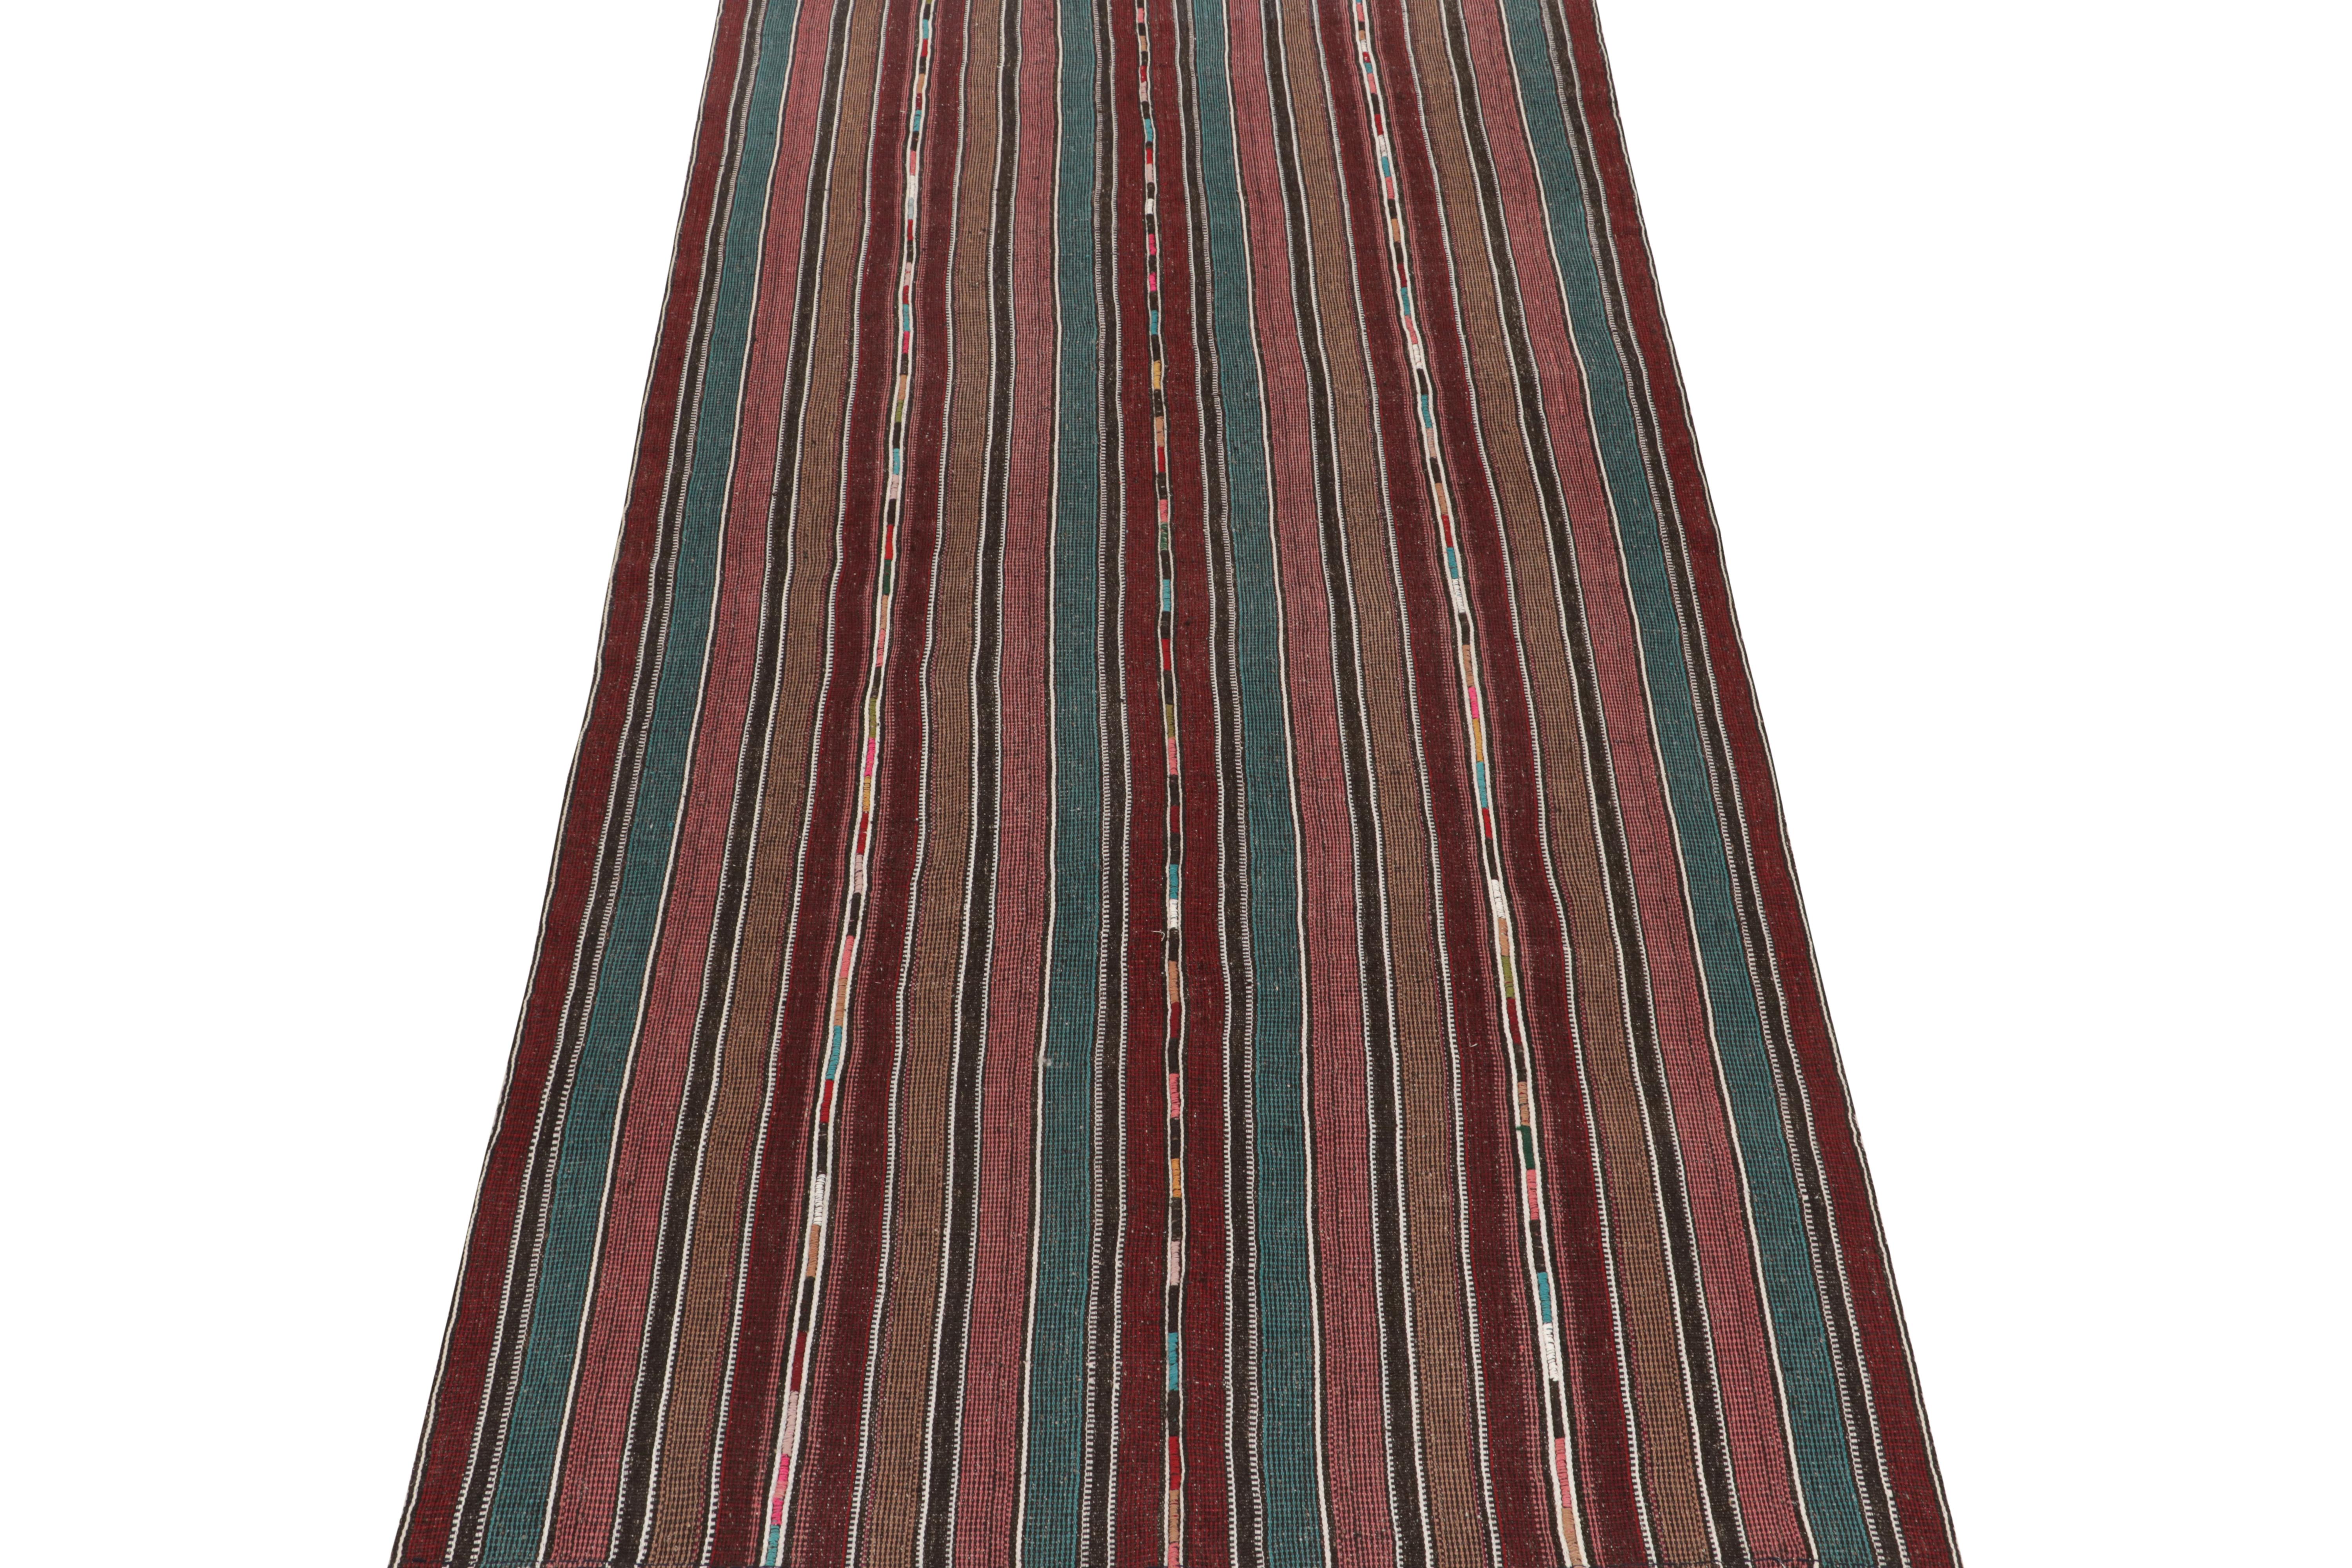 Dieser 6x12 große persische Schahsavan-Kelim ist ein einzigartiger Stammesteppich für seine Zeit - gewebt aus Wolle um 1950-1960. 

Weiter zum Design:

Das Feld weist abwechselnd blaue, kastanienbraune und braune Streifen auf. Kenner werden die